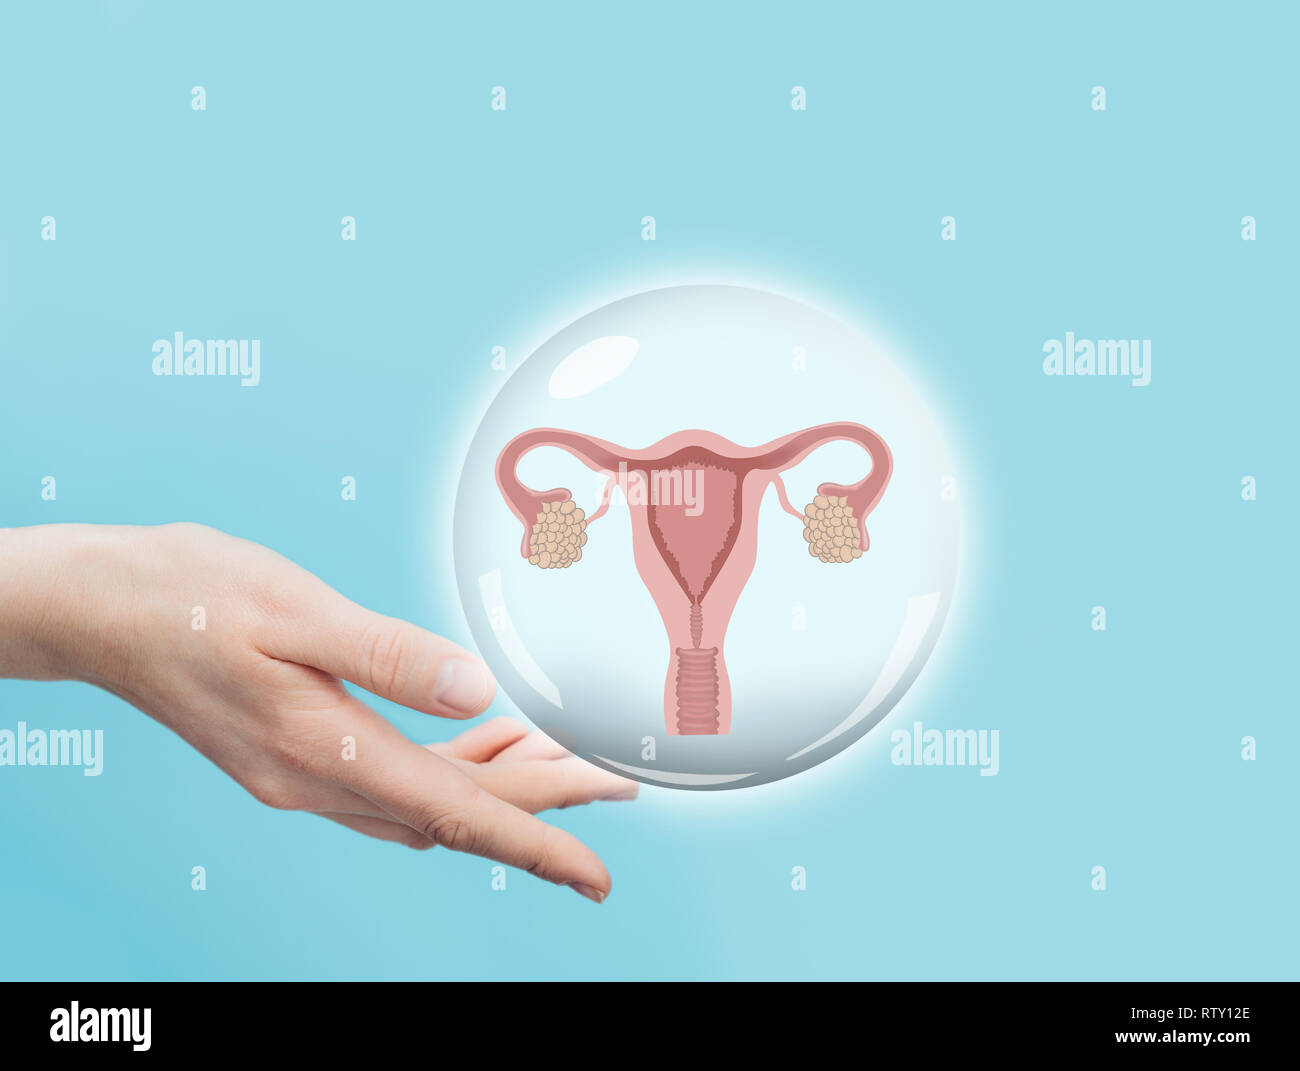 Femme main tenant un modèle virtuel de l'utérus et des ovaires. Système reproducteur femelle Banque D'Images